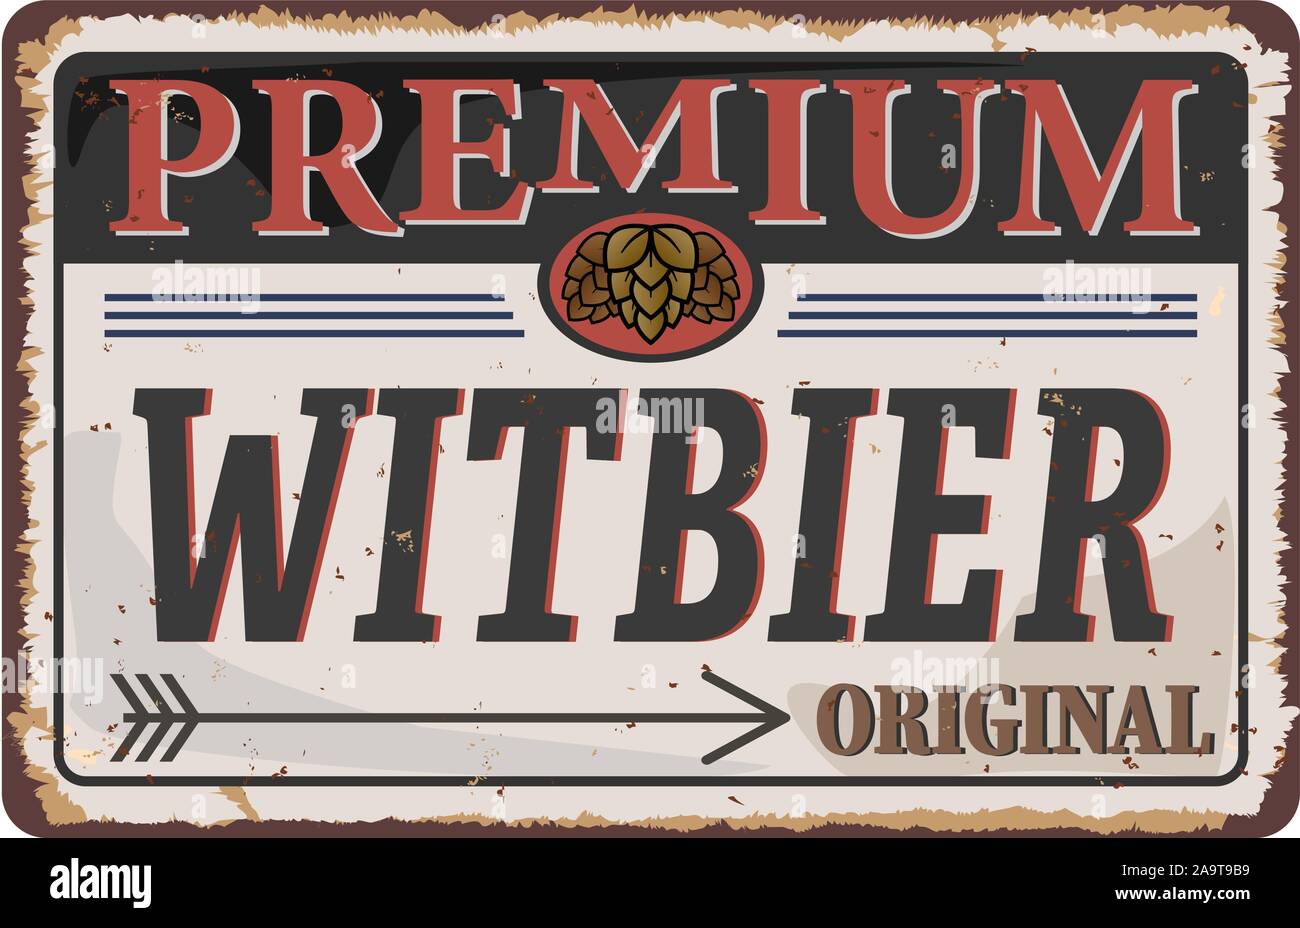 Vintage metal sign Witbier belgian Beer original Stock Vector